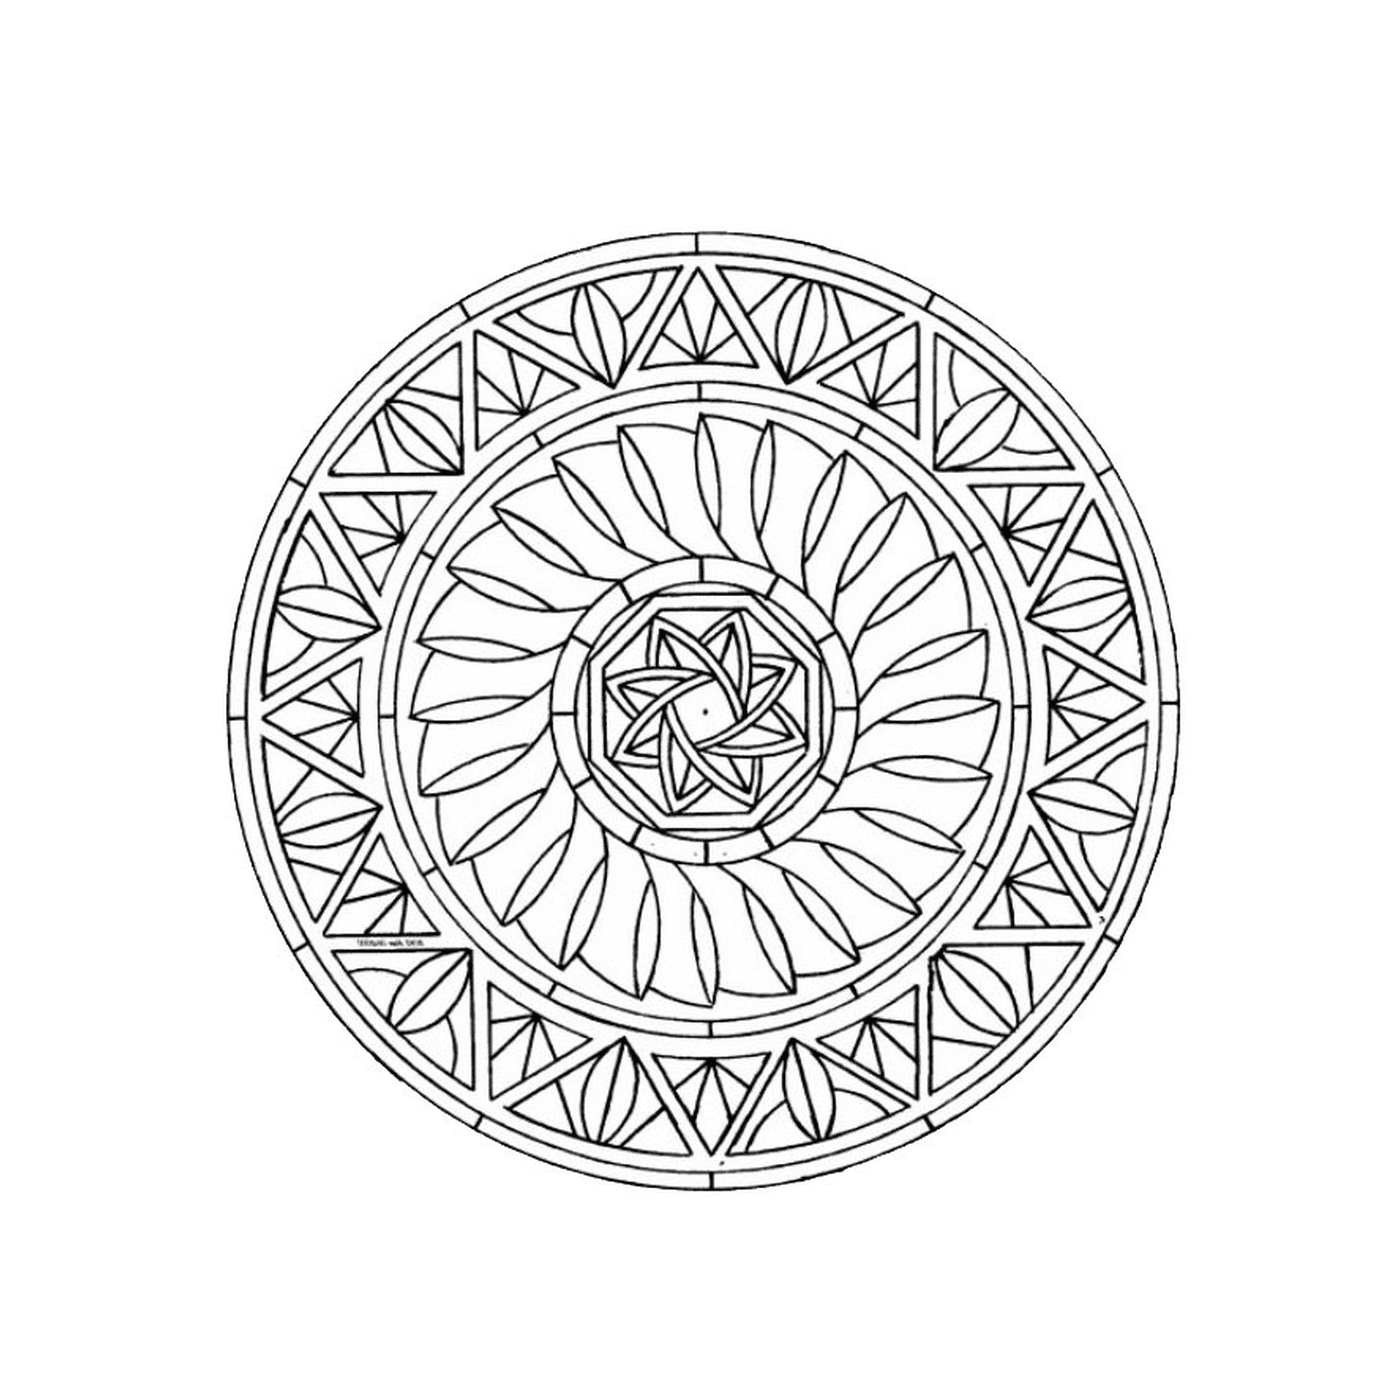  Mandala com formas geométricas 